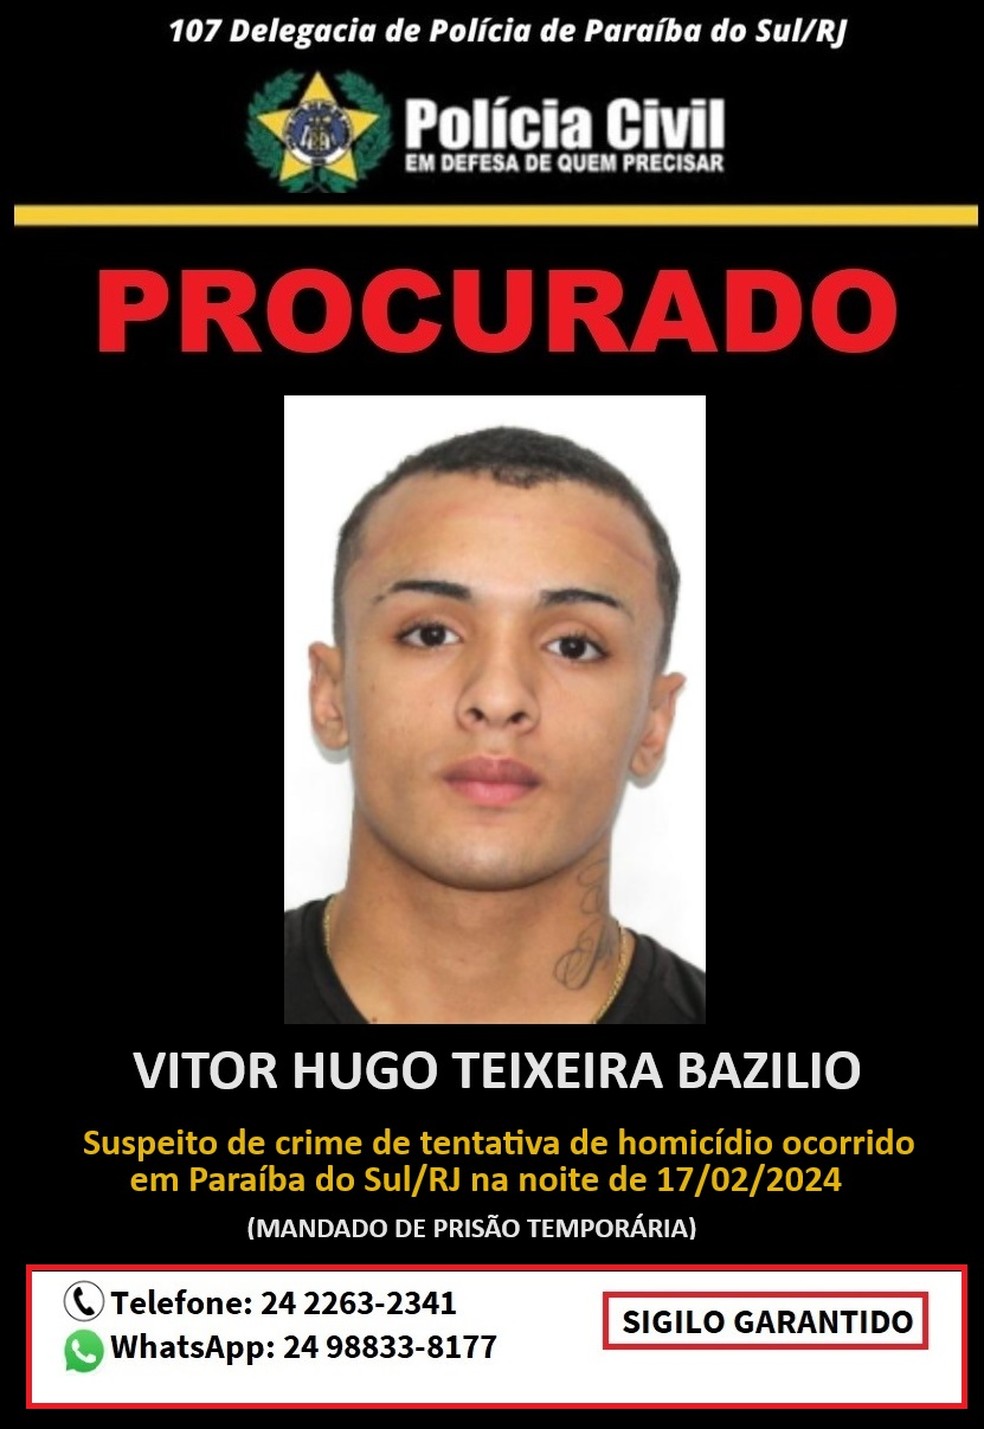 Polícia Civil divulga cartaz para ajudar a localizar suspeito de tentativa de homicídio — Foto: Divulgação/Polícia Civil